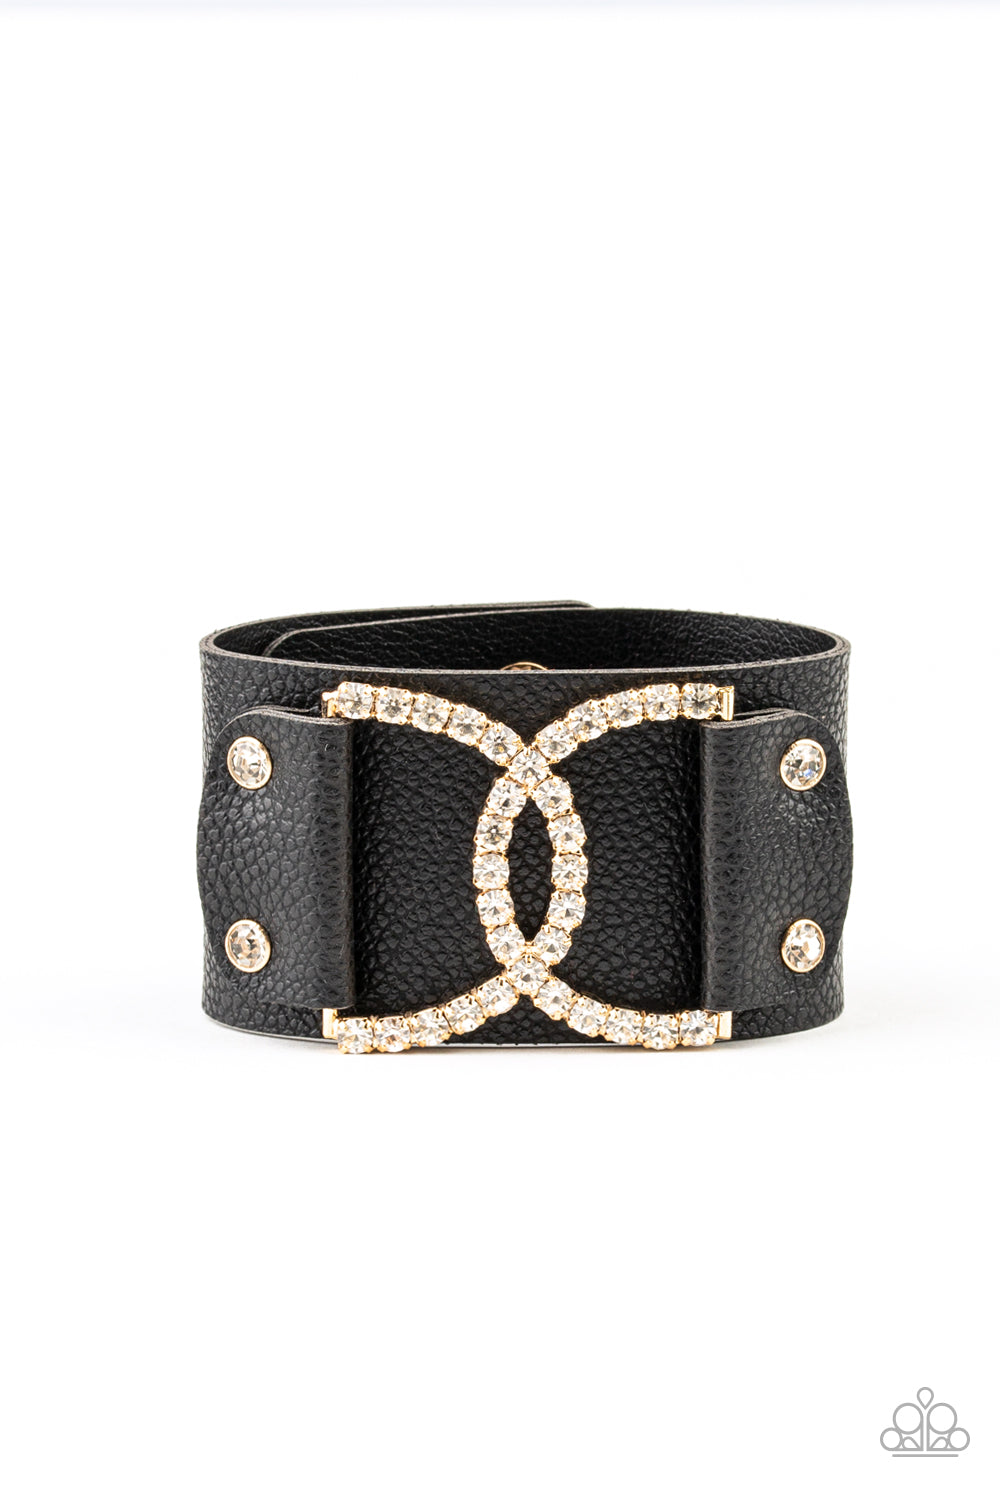 Couture Culture - Gold/Black wrap bracelet